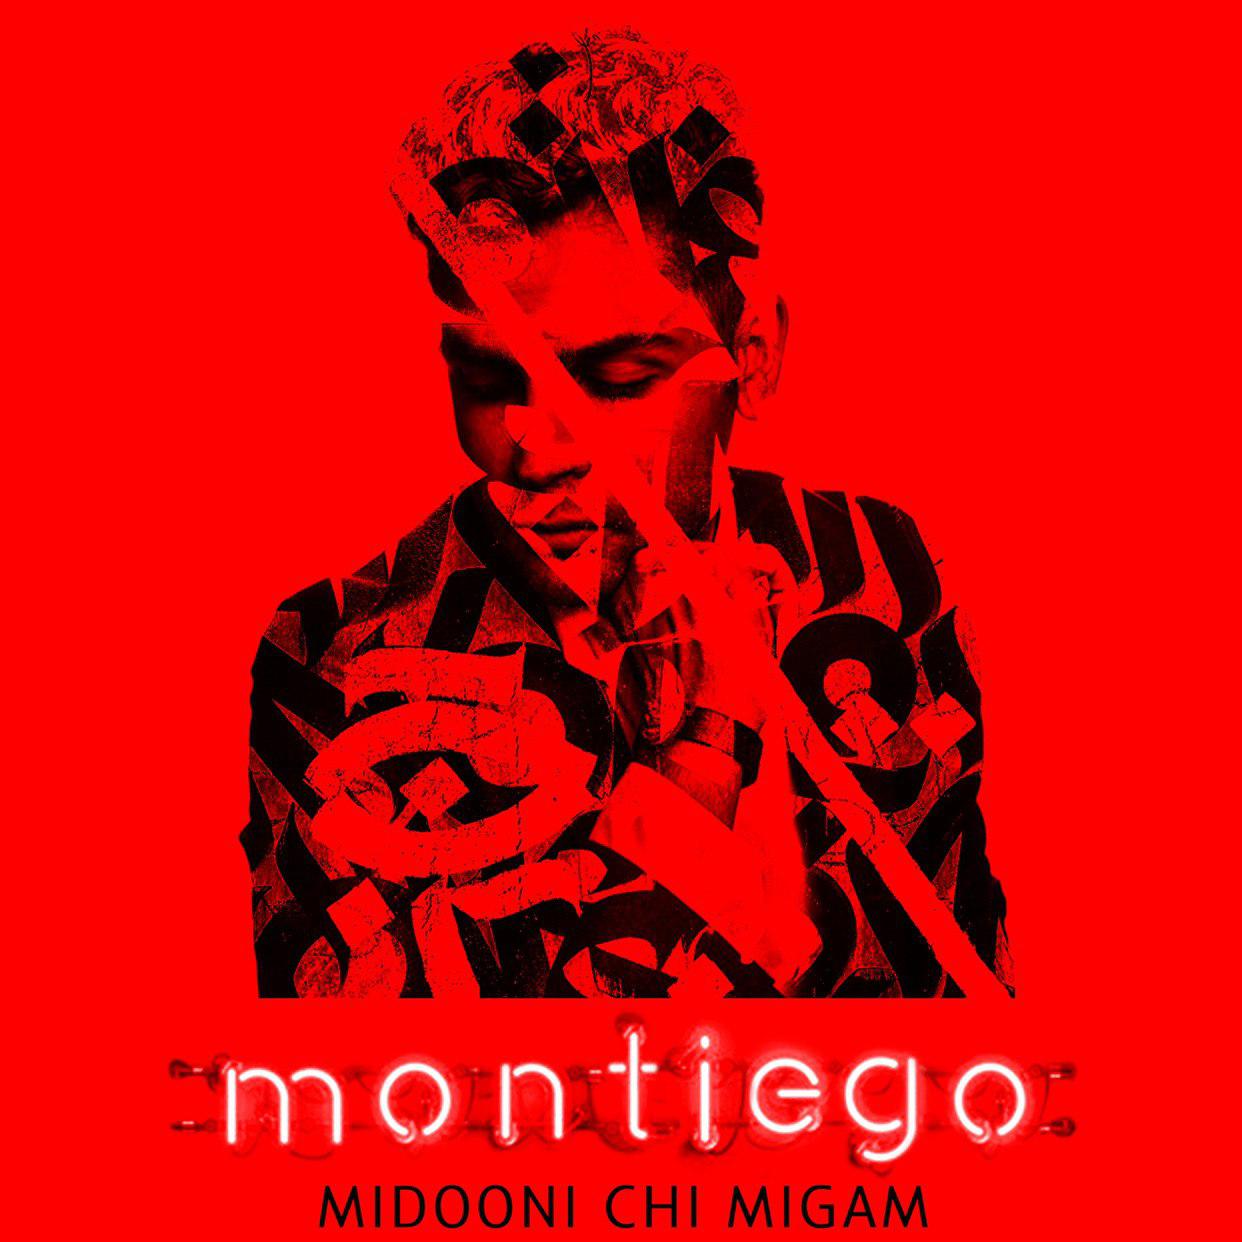  دانلود آهنگ جدید مونتیه گو - میدونی چی میگم | Download New Music By Montiego - Midooni Chi Migam